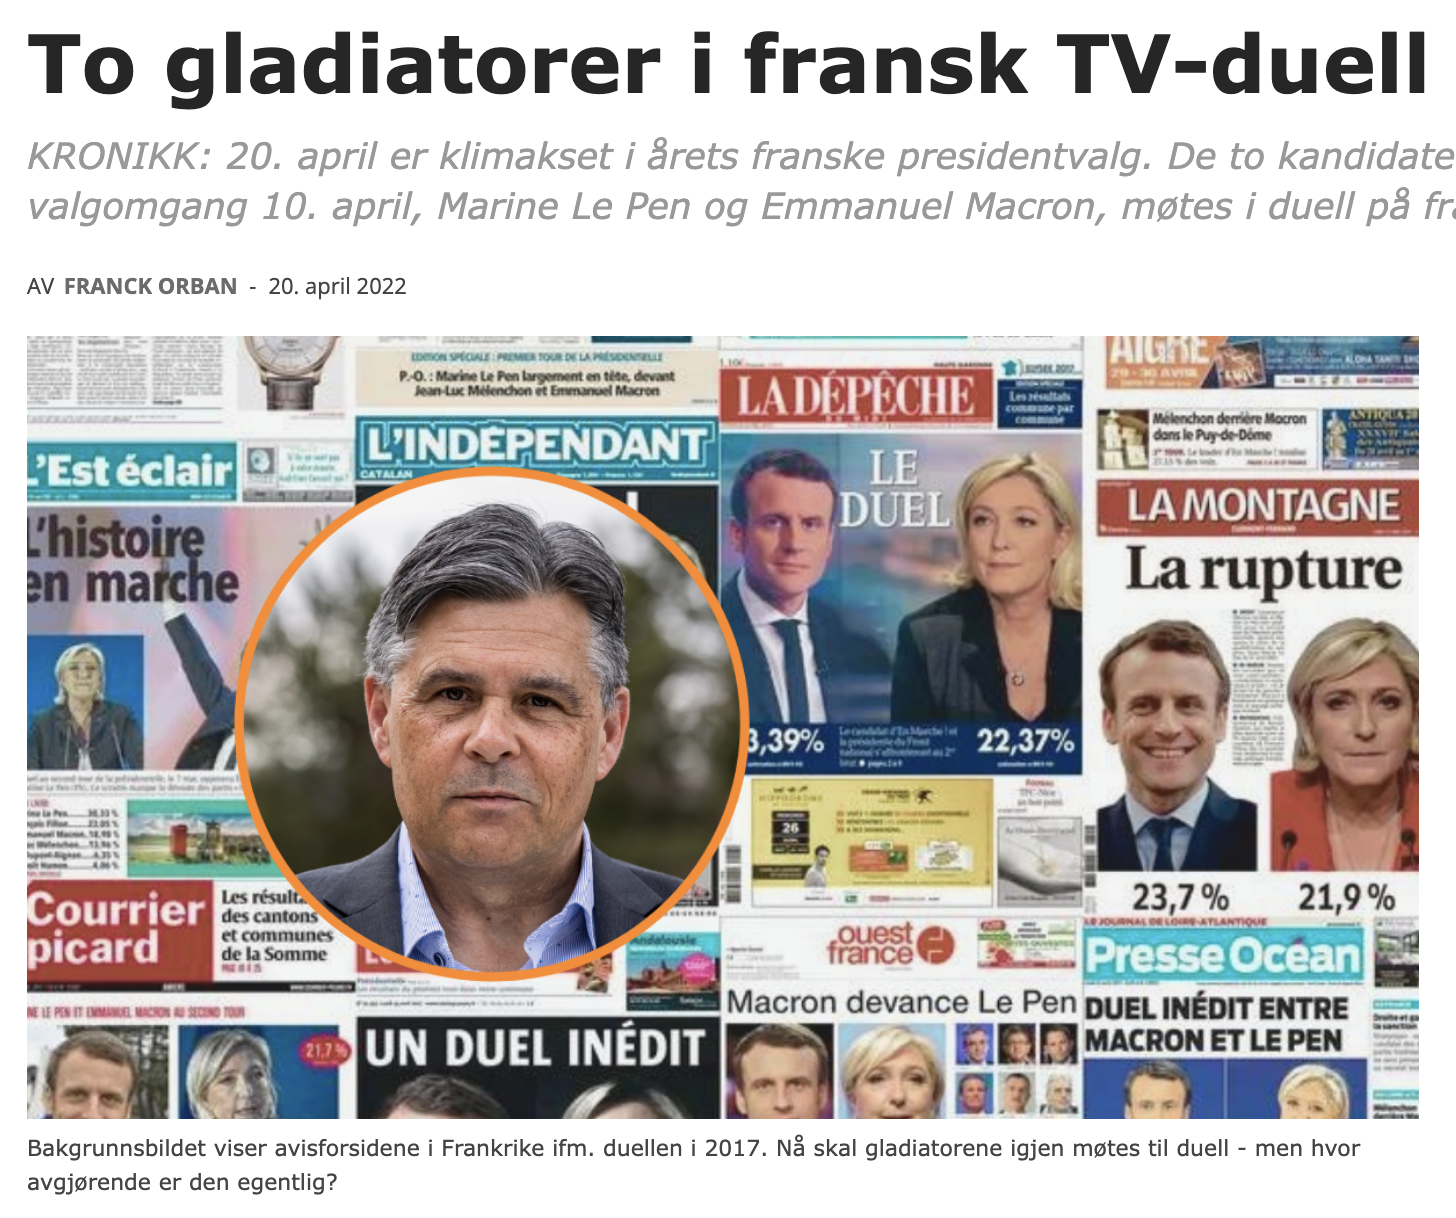 To gladiatorer i fransk TV-duell